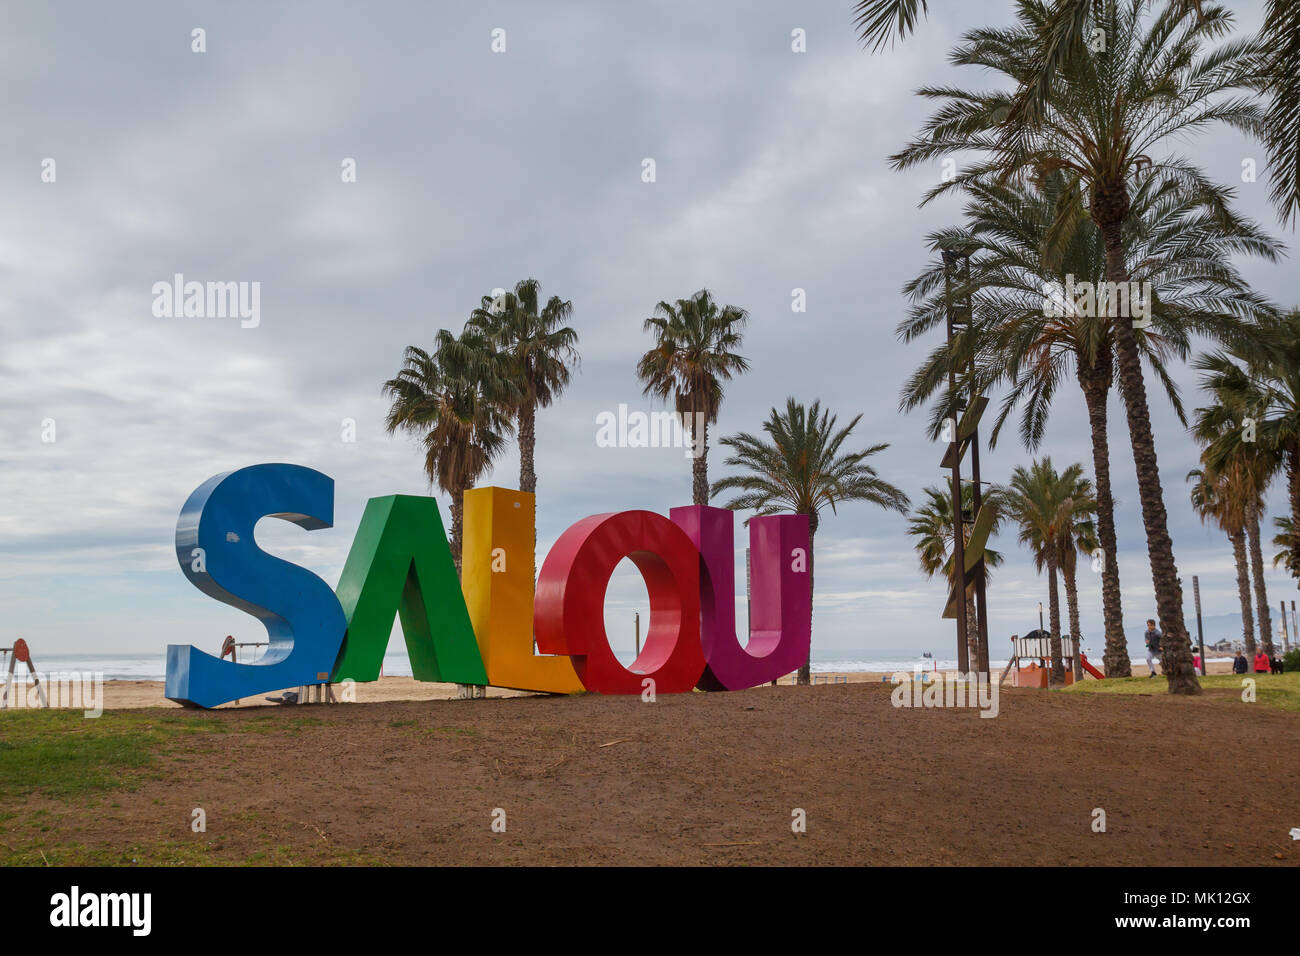 Texte coloré dans la plage de Llevant à Salou, une importante destination touristique à l'été, dans la Costa Dorada catalane Banque D'Images